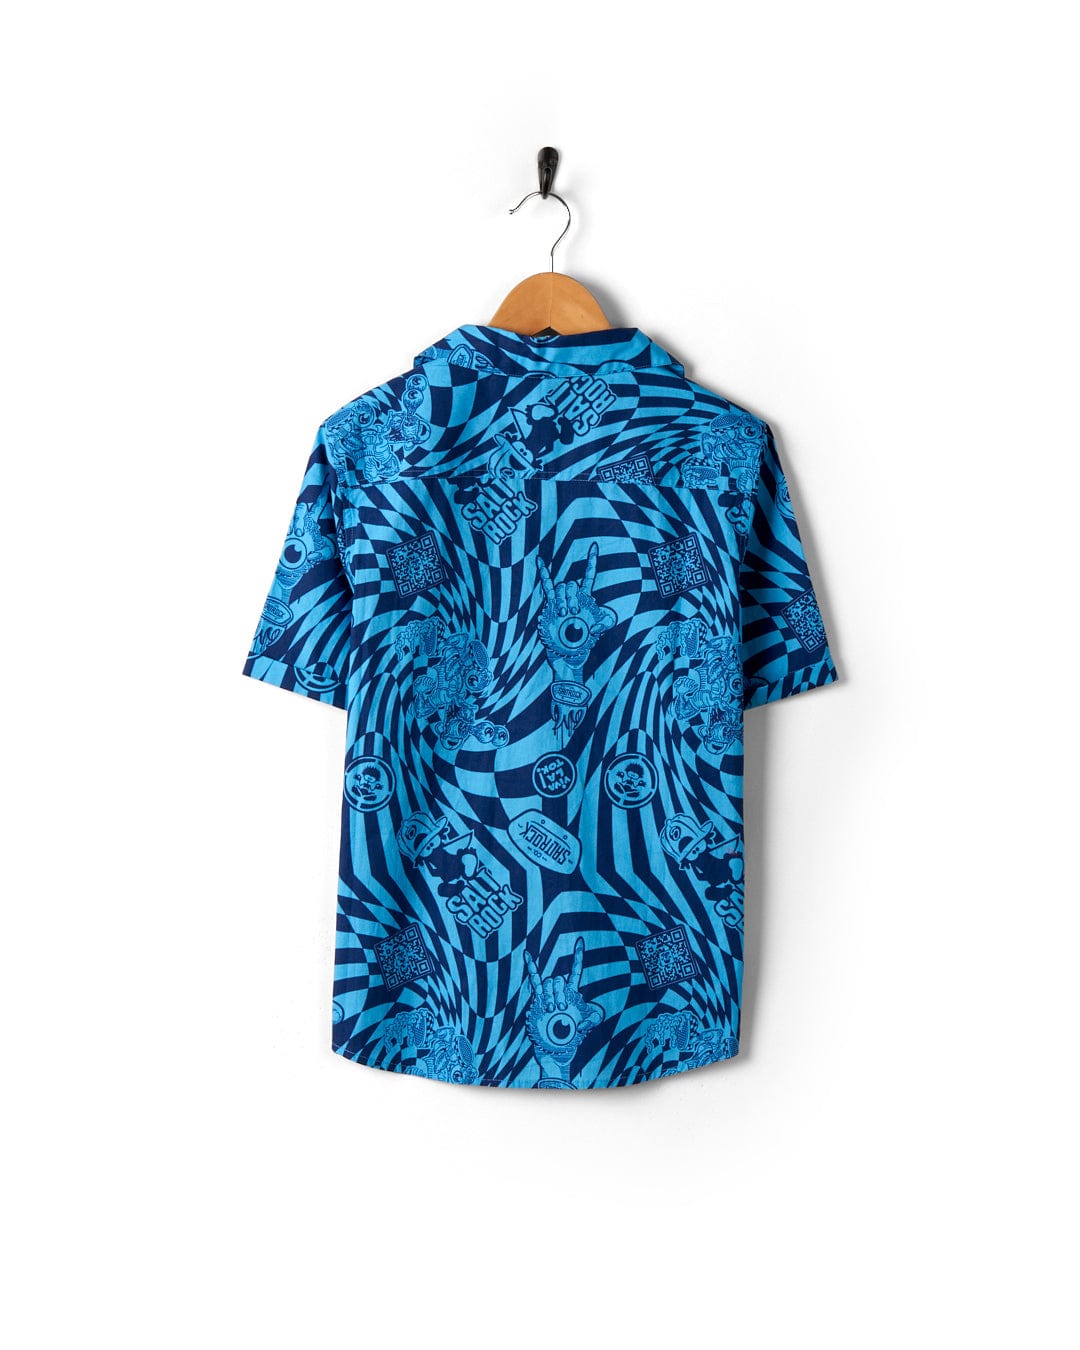 A Saltrock blue Hawaiian shirt with a geometric print, hanging on a wooden hanger.